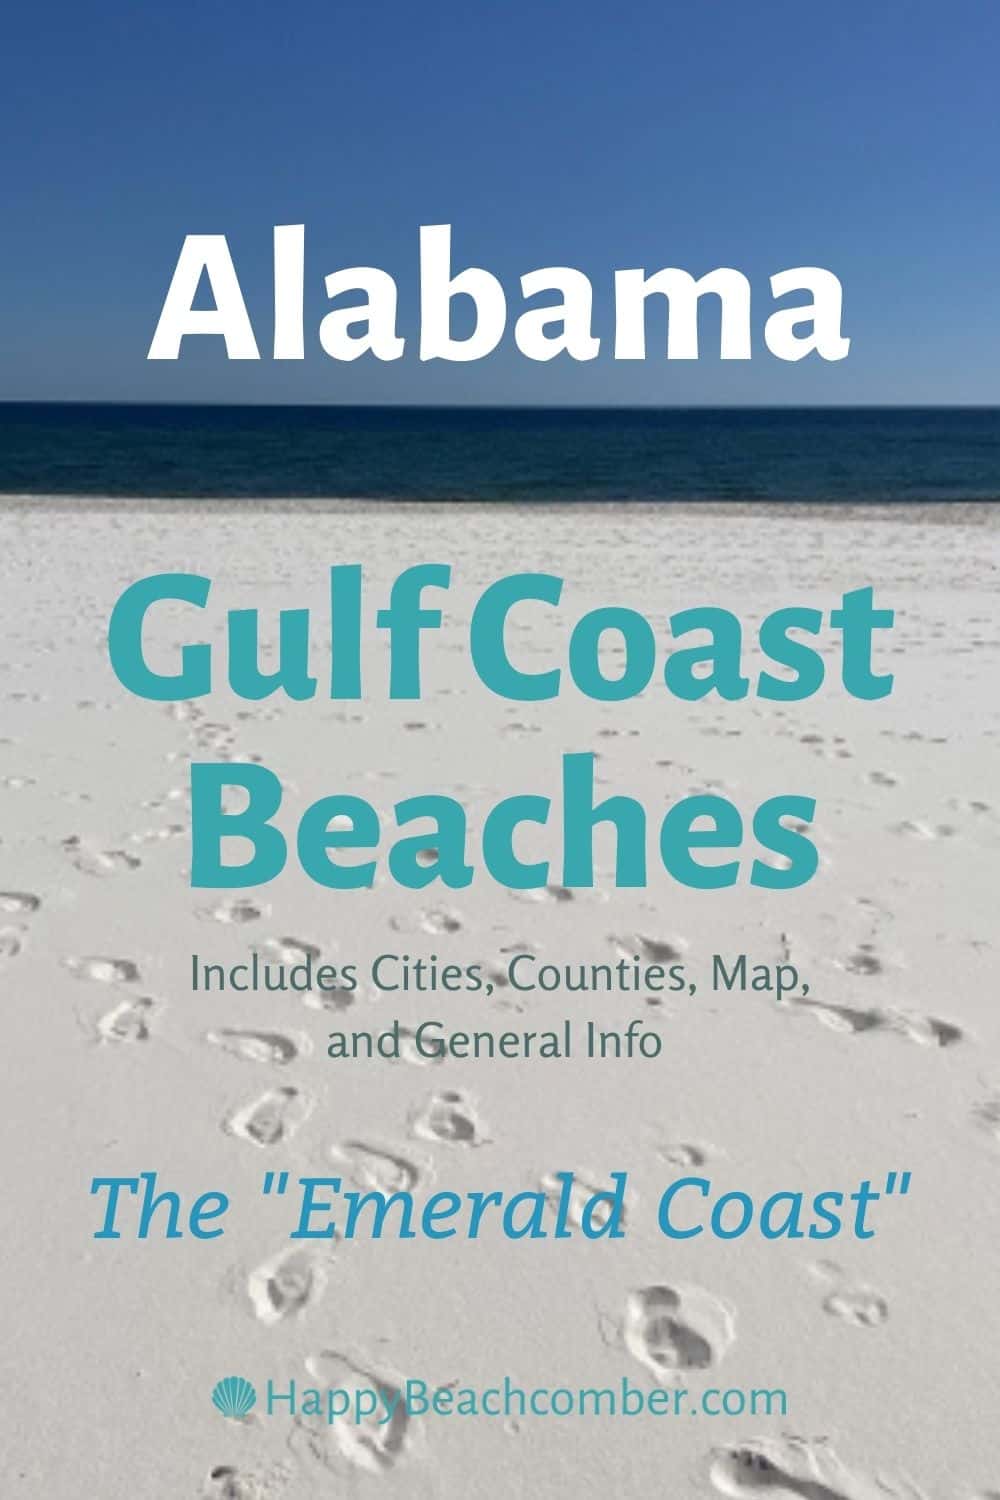 Alabama Gulf Coast Beaches - The Emerald Coast